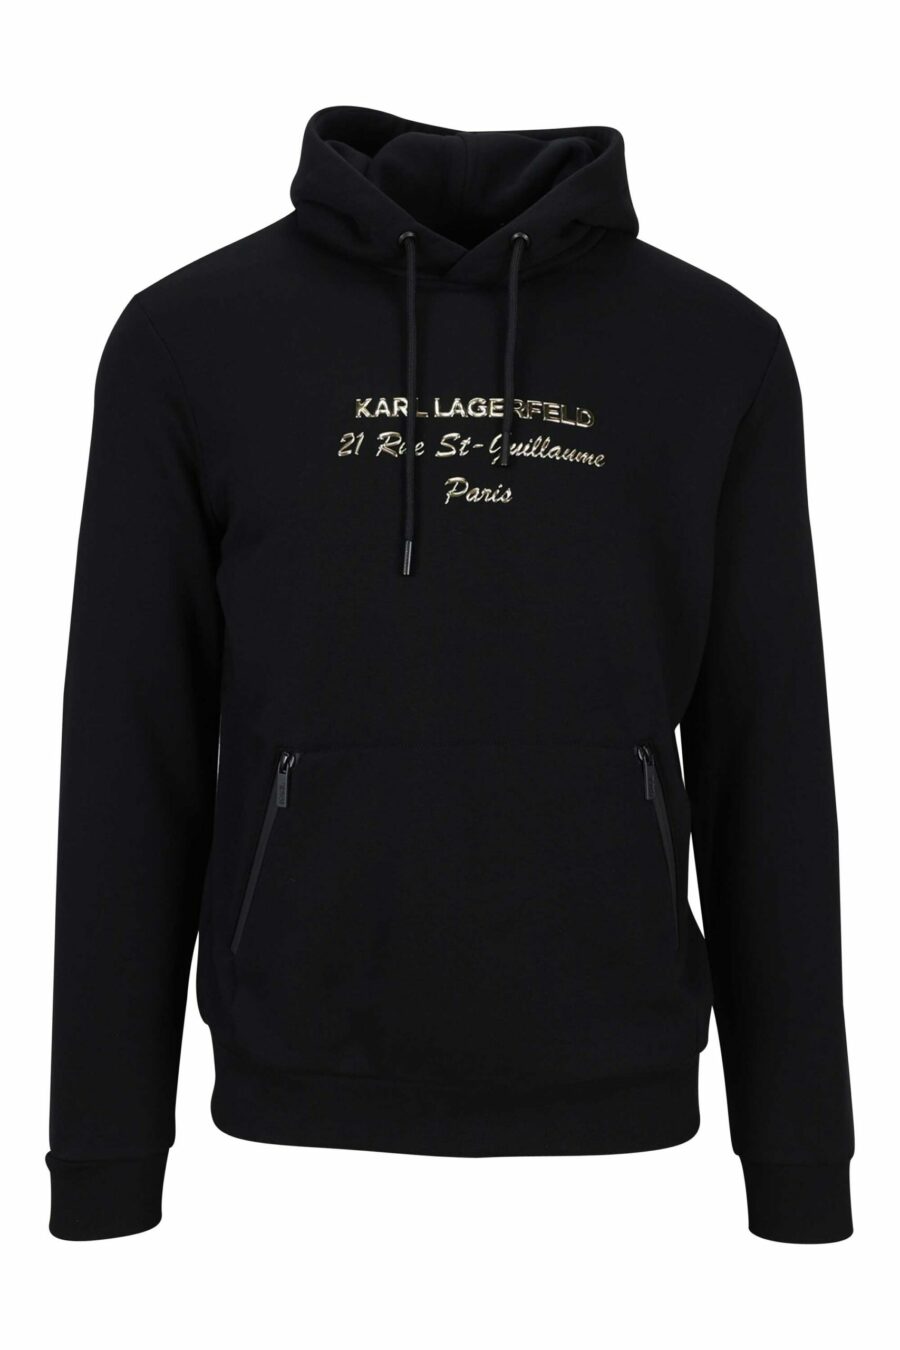 Schwarzes Kapuzensweatshirt mit "rue st guillaume" Logo in Goldschrift - 4062226648967 1 skaliert